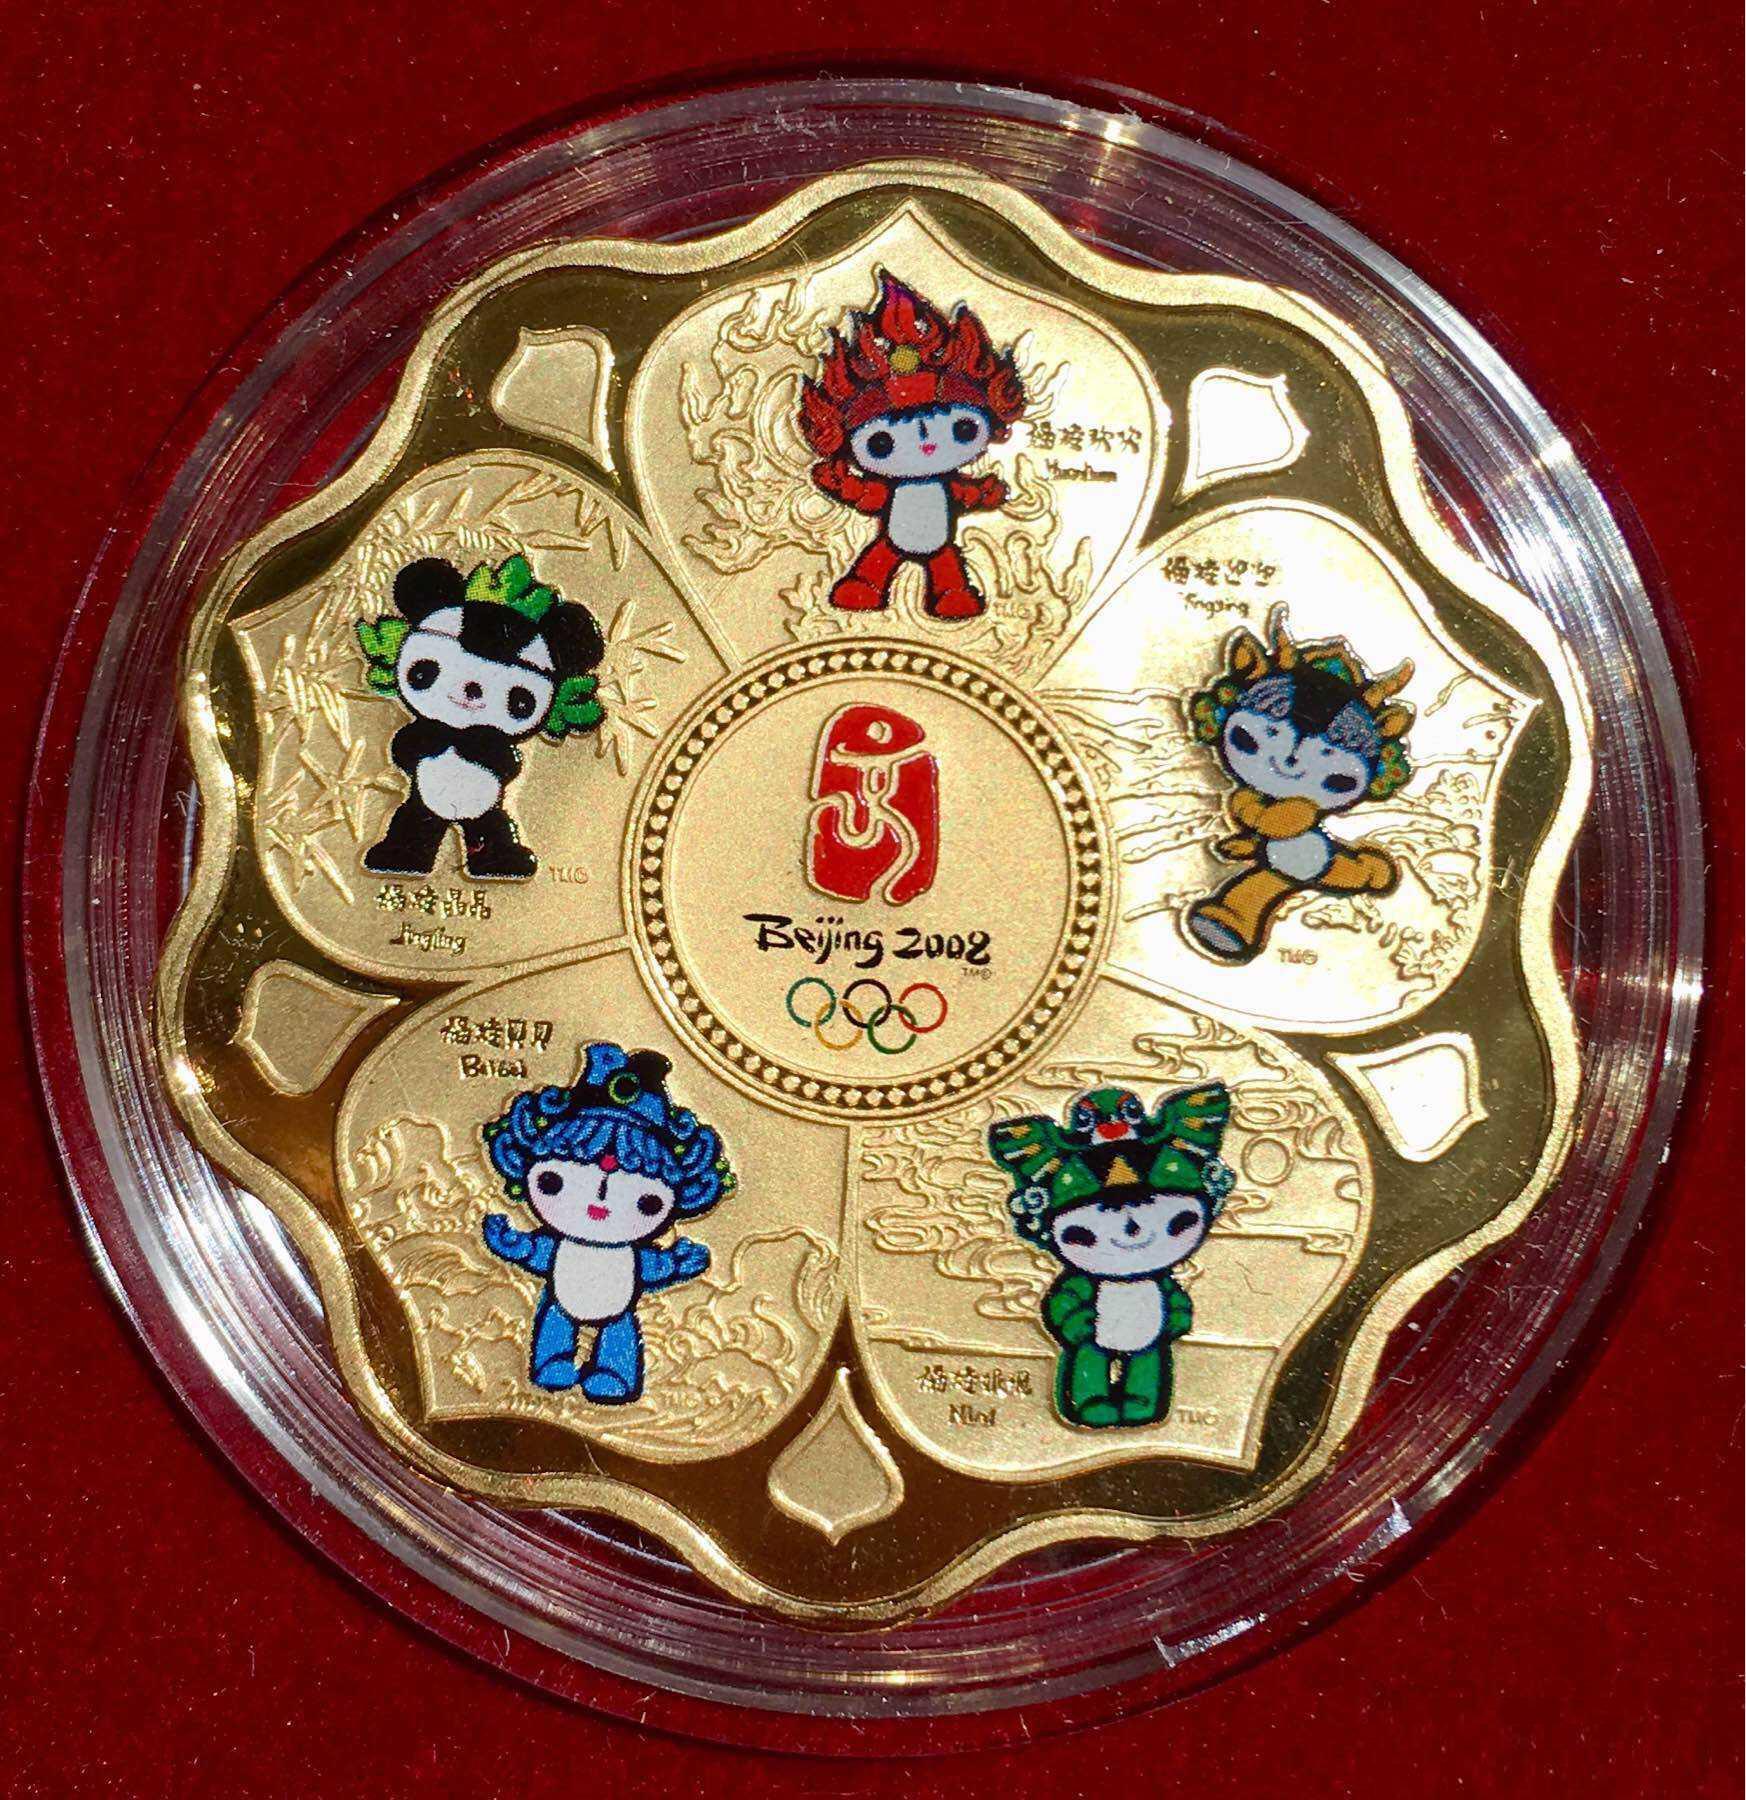 2008奥运福娃纪念币图片